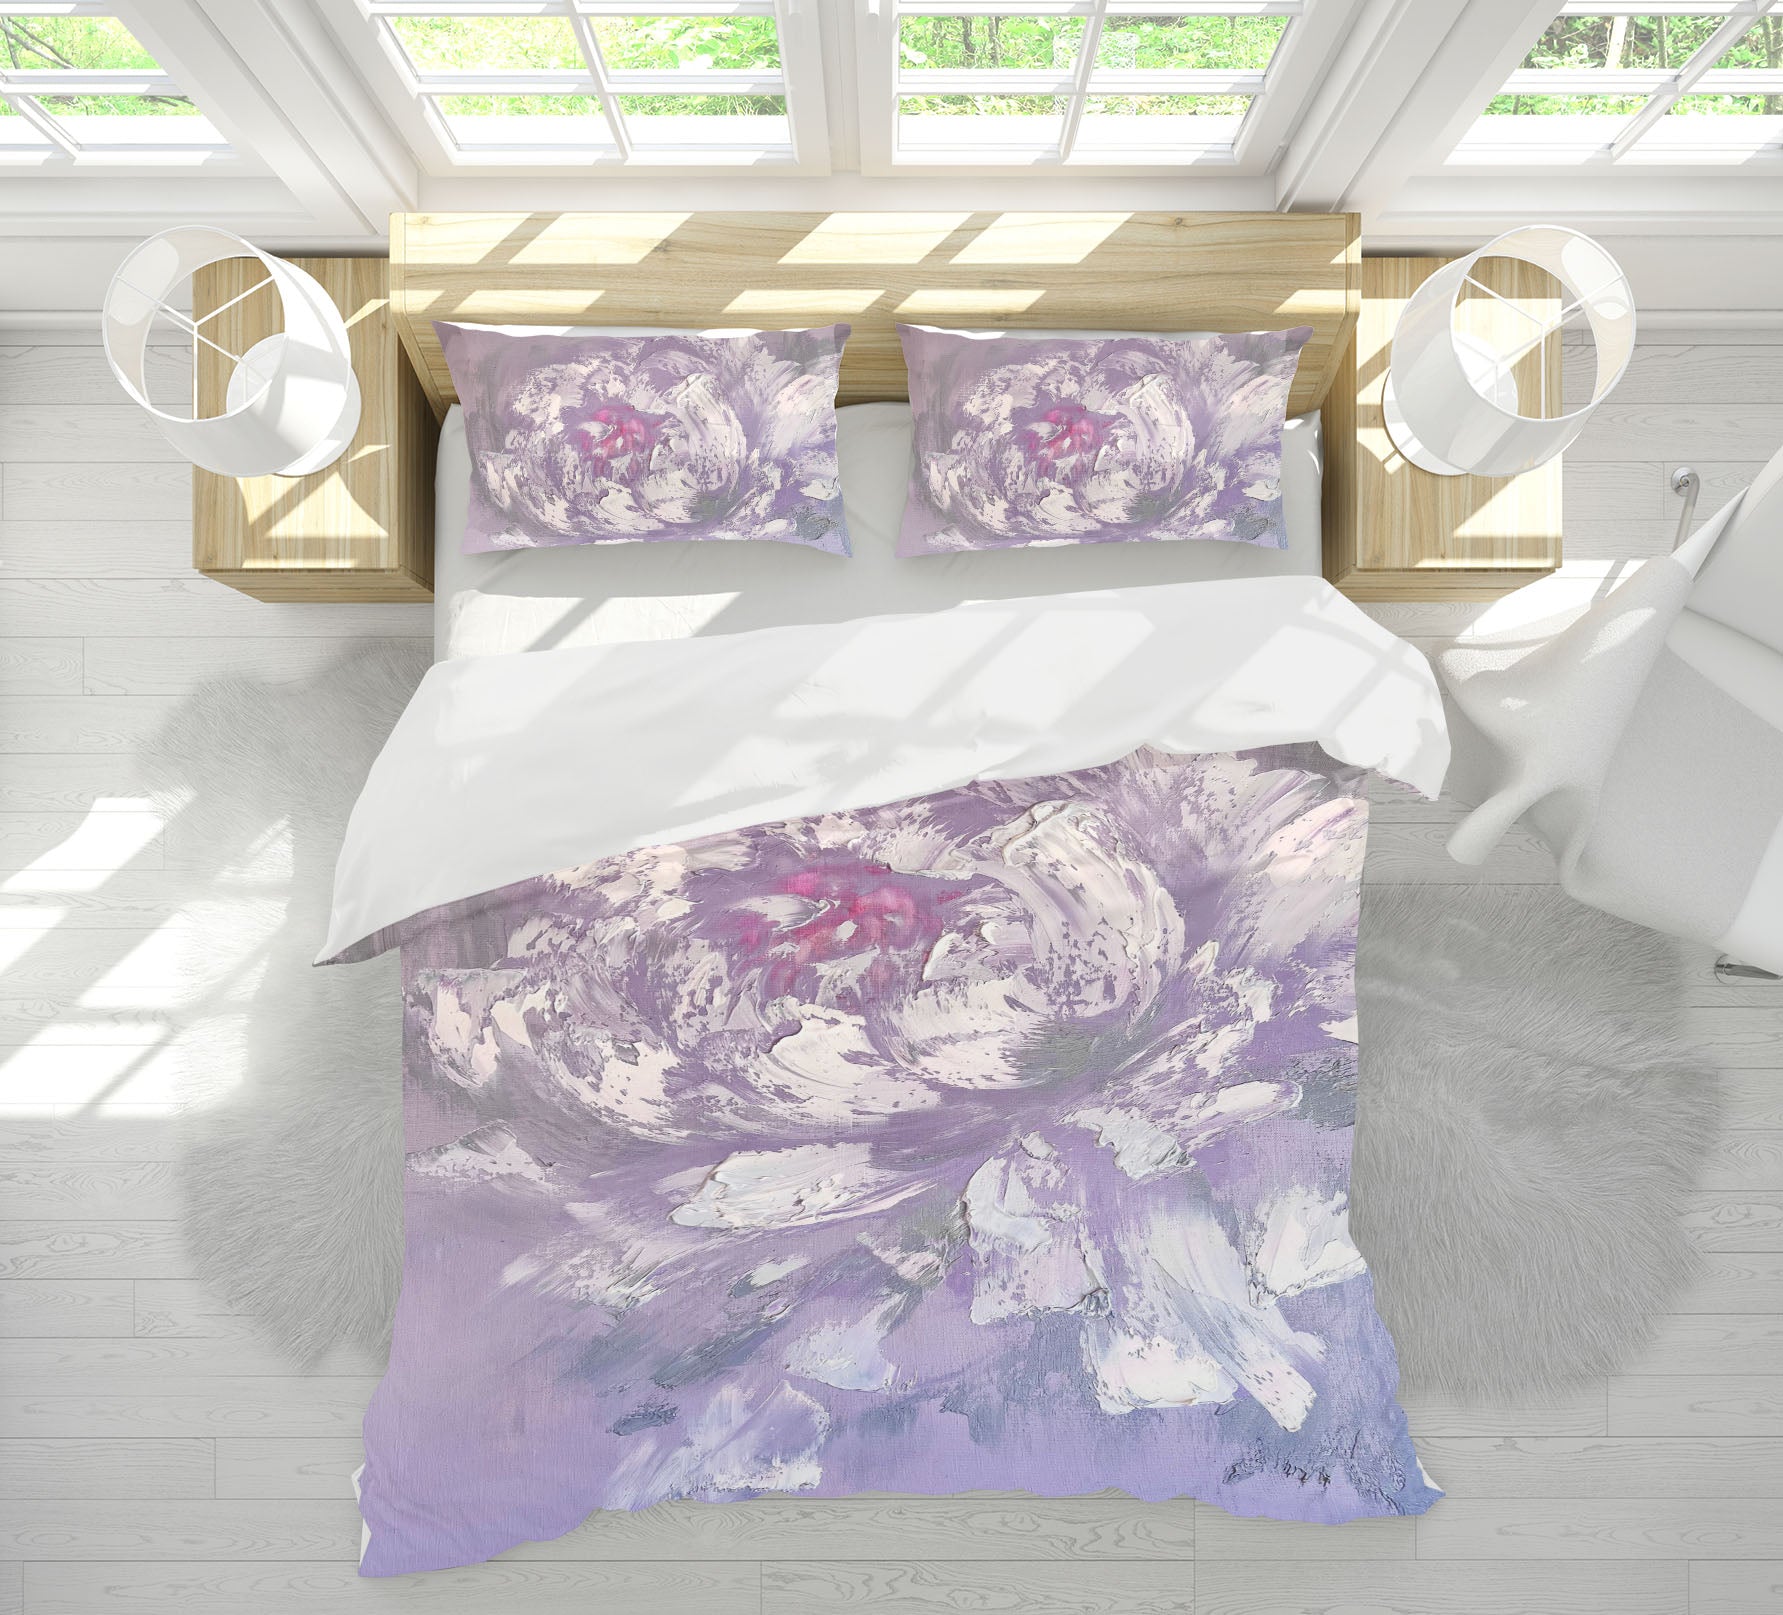 3D White Pattern 3806 Skromova Marina Bedding Bed Pillowcases Quilt Cover Duvet Cover